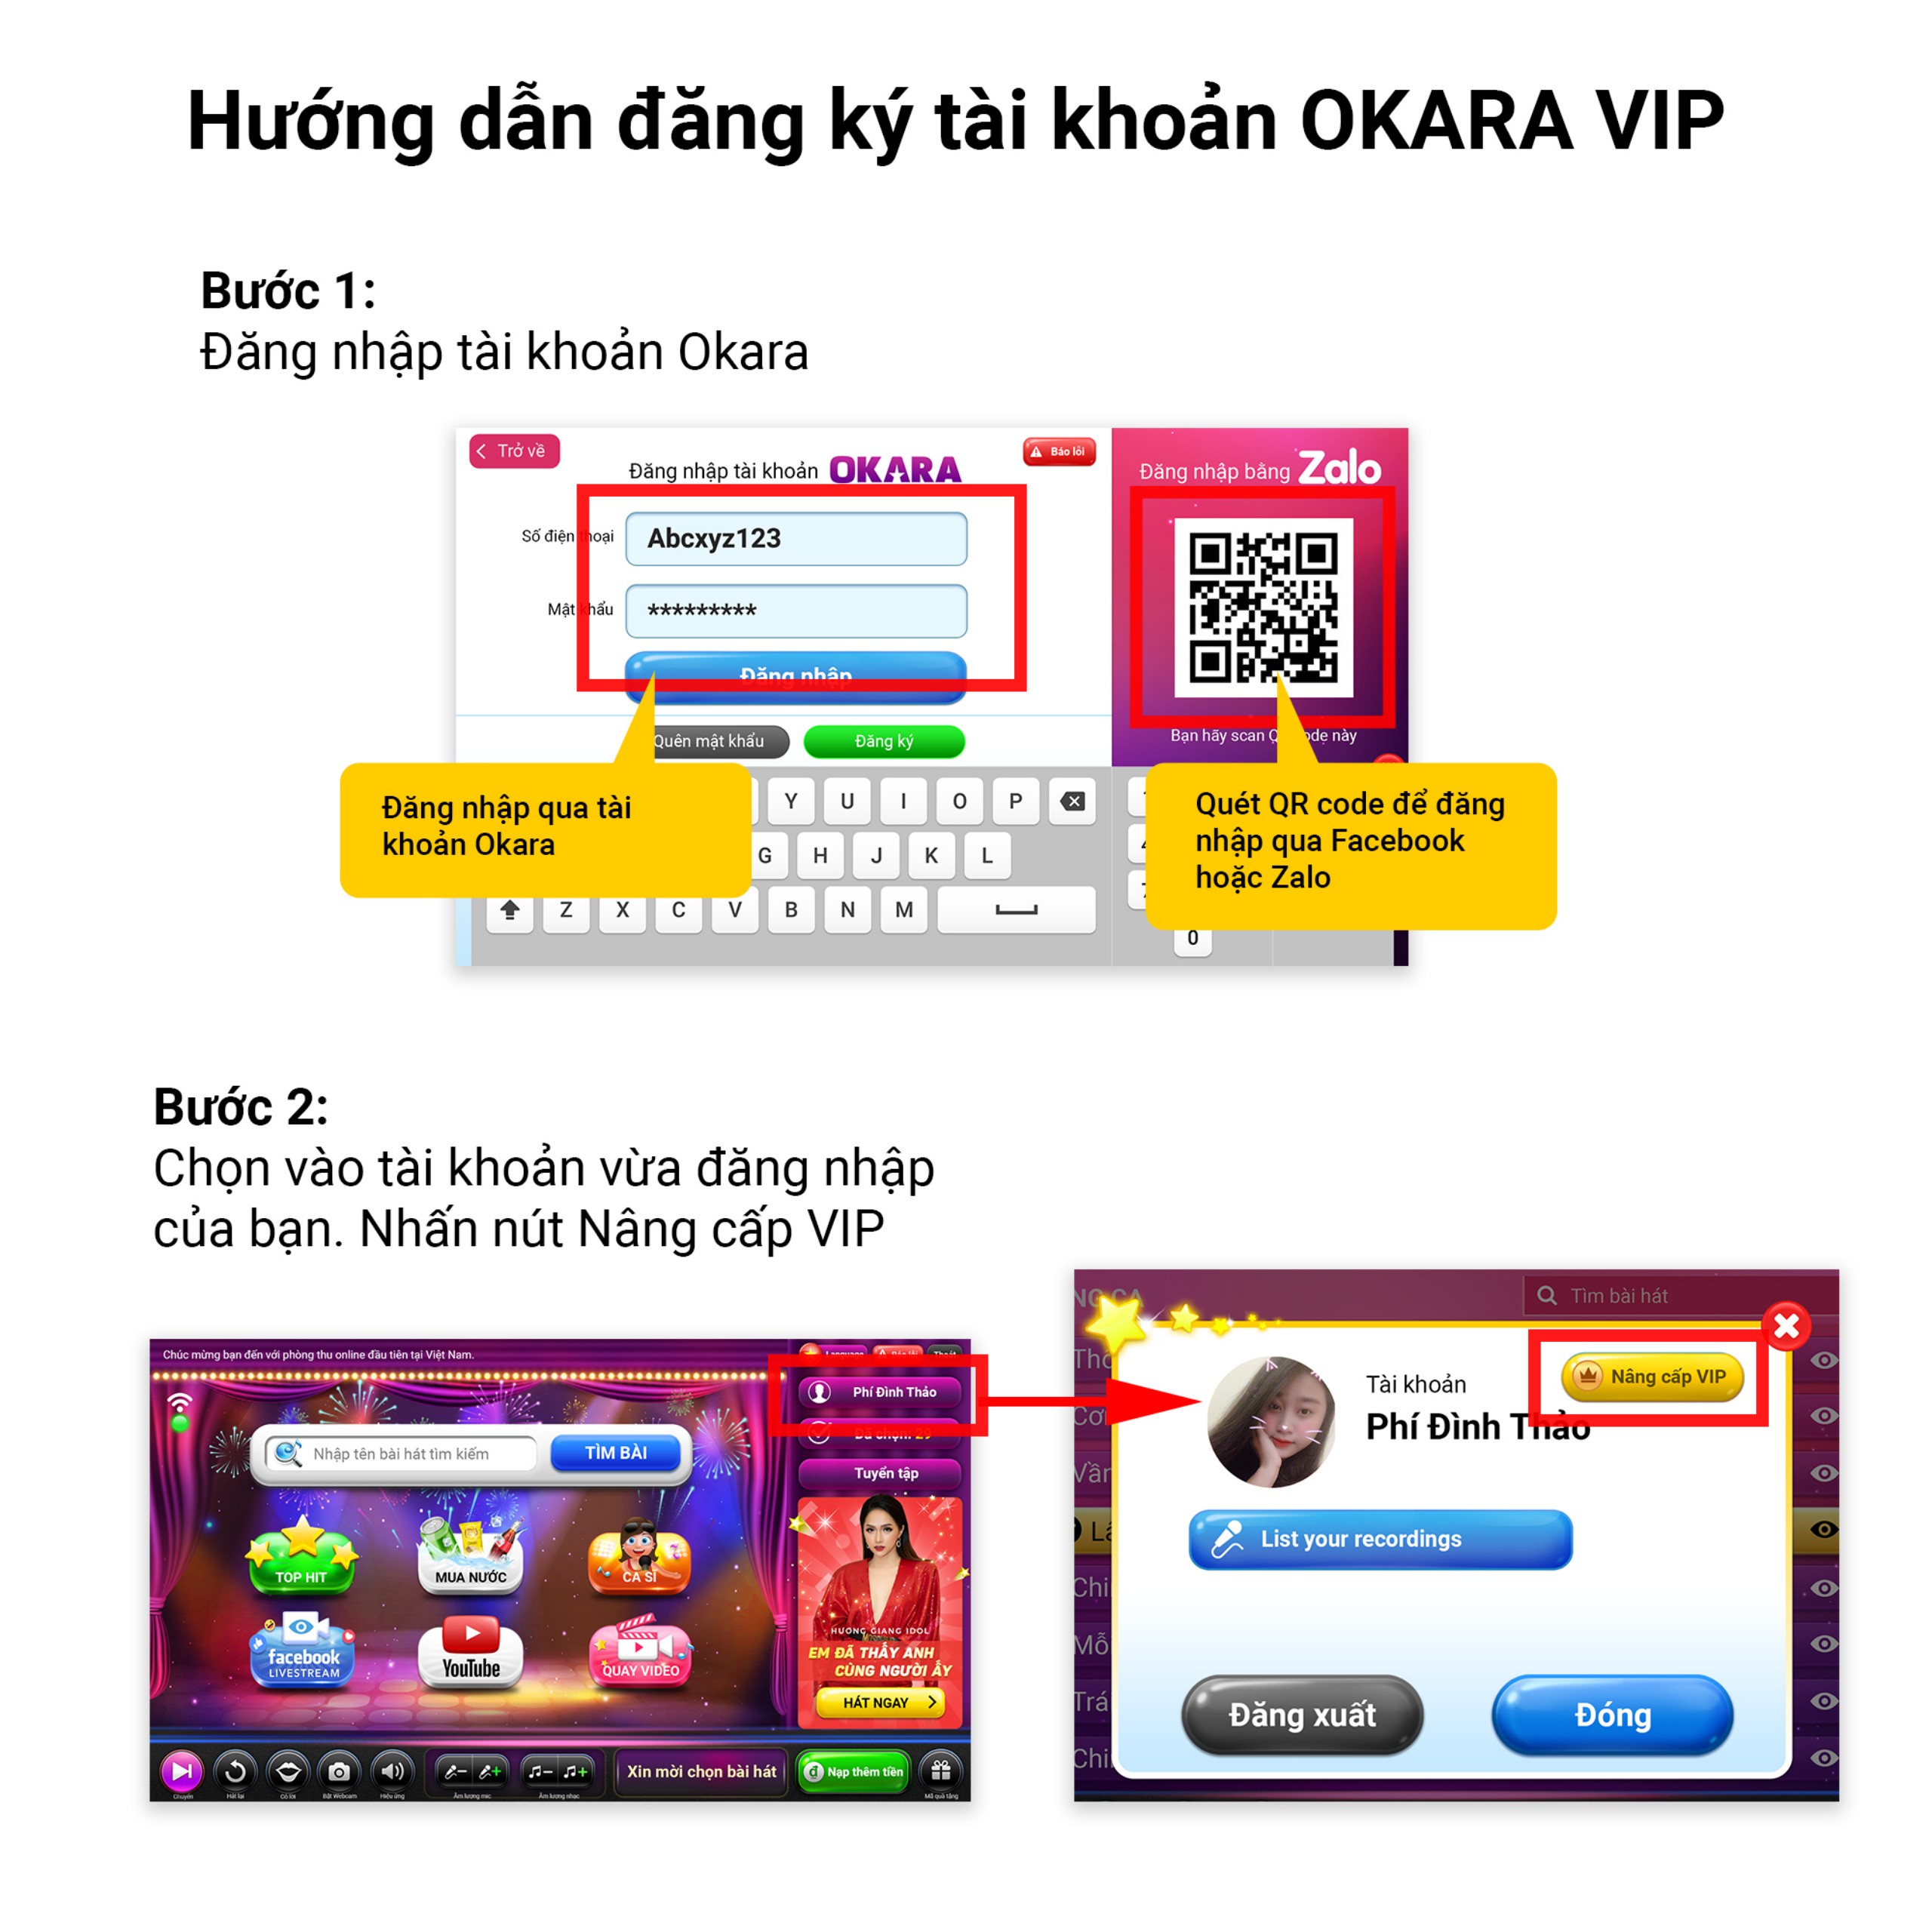 Hướng dẫn đăng ký tài khoản OKARA VIP trên booth Okara